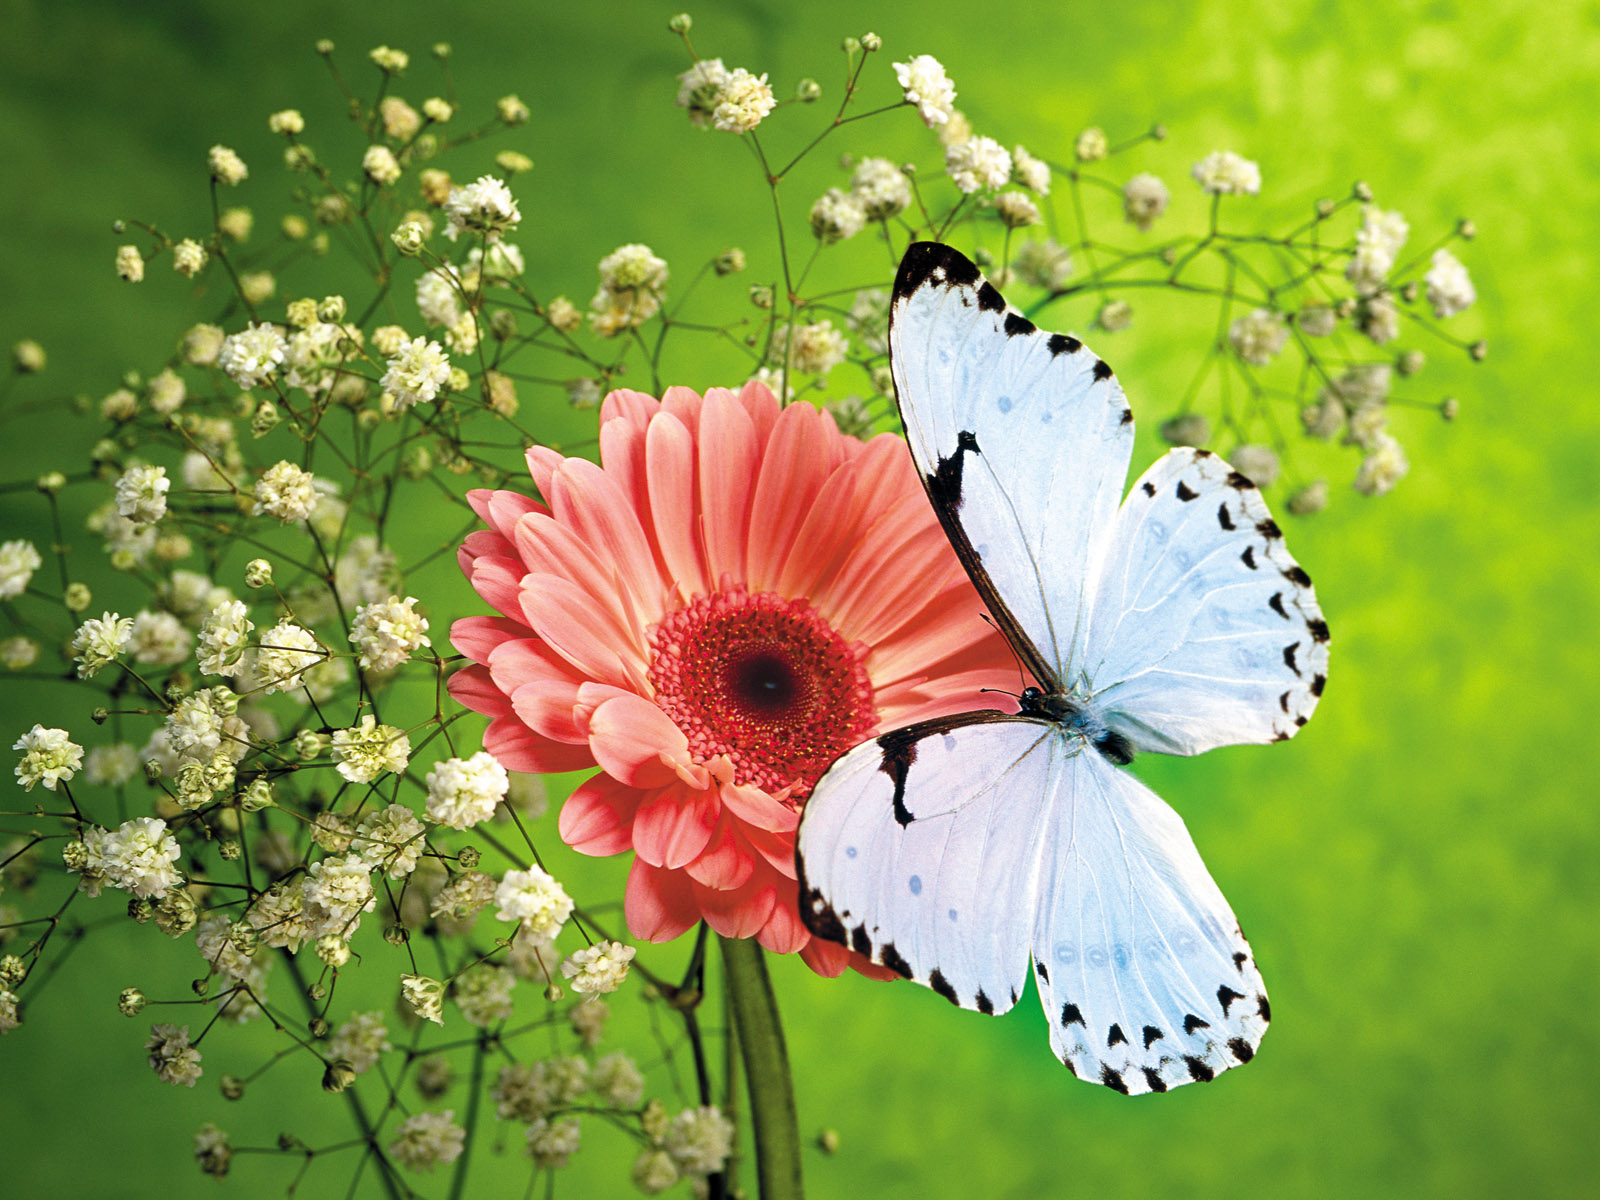 bellissimi sfondi di immagini di fiori,la farfalla,insetto,falene e farfalle,fiore,invertebrato